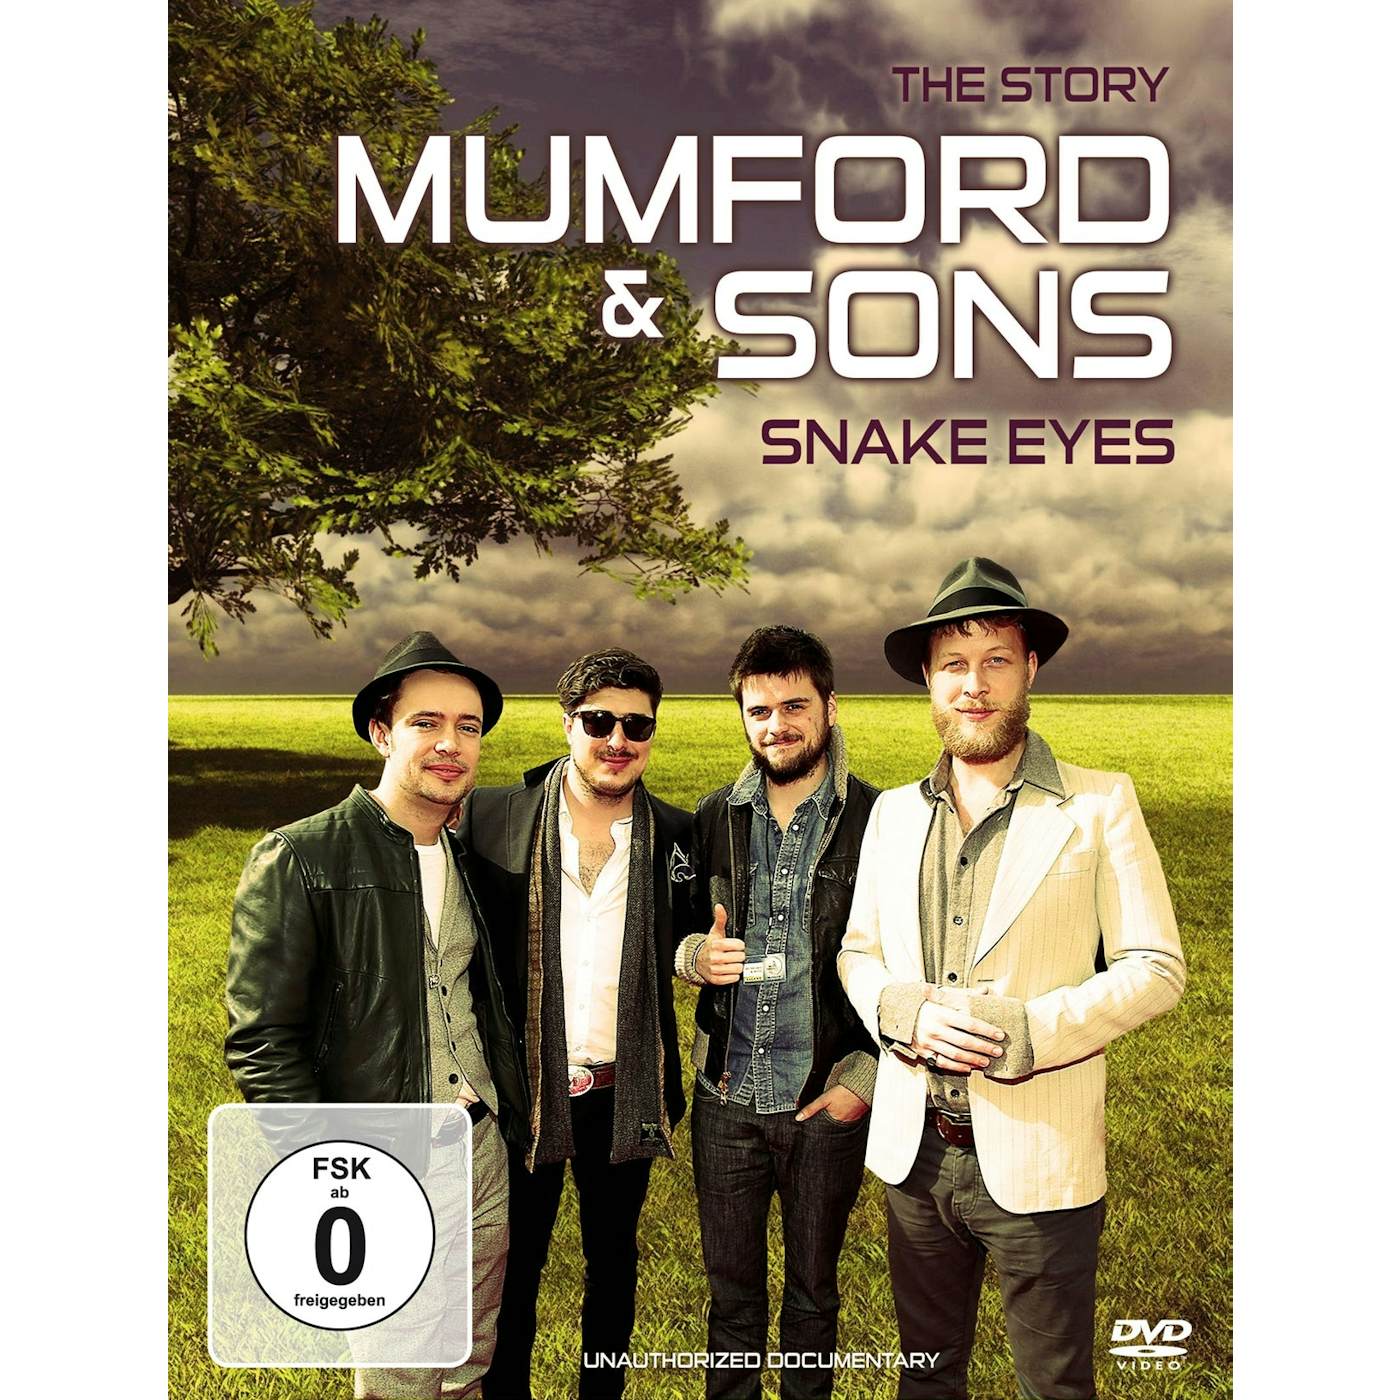 Mumford & Sons DVD - Snake Eyes / Documentary